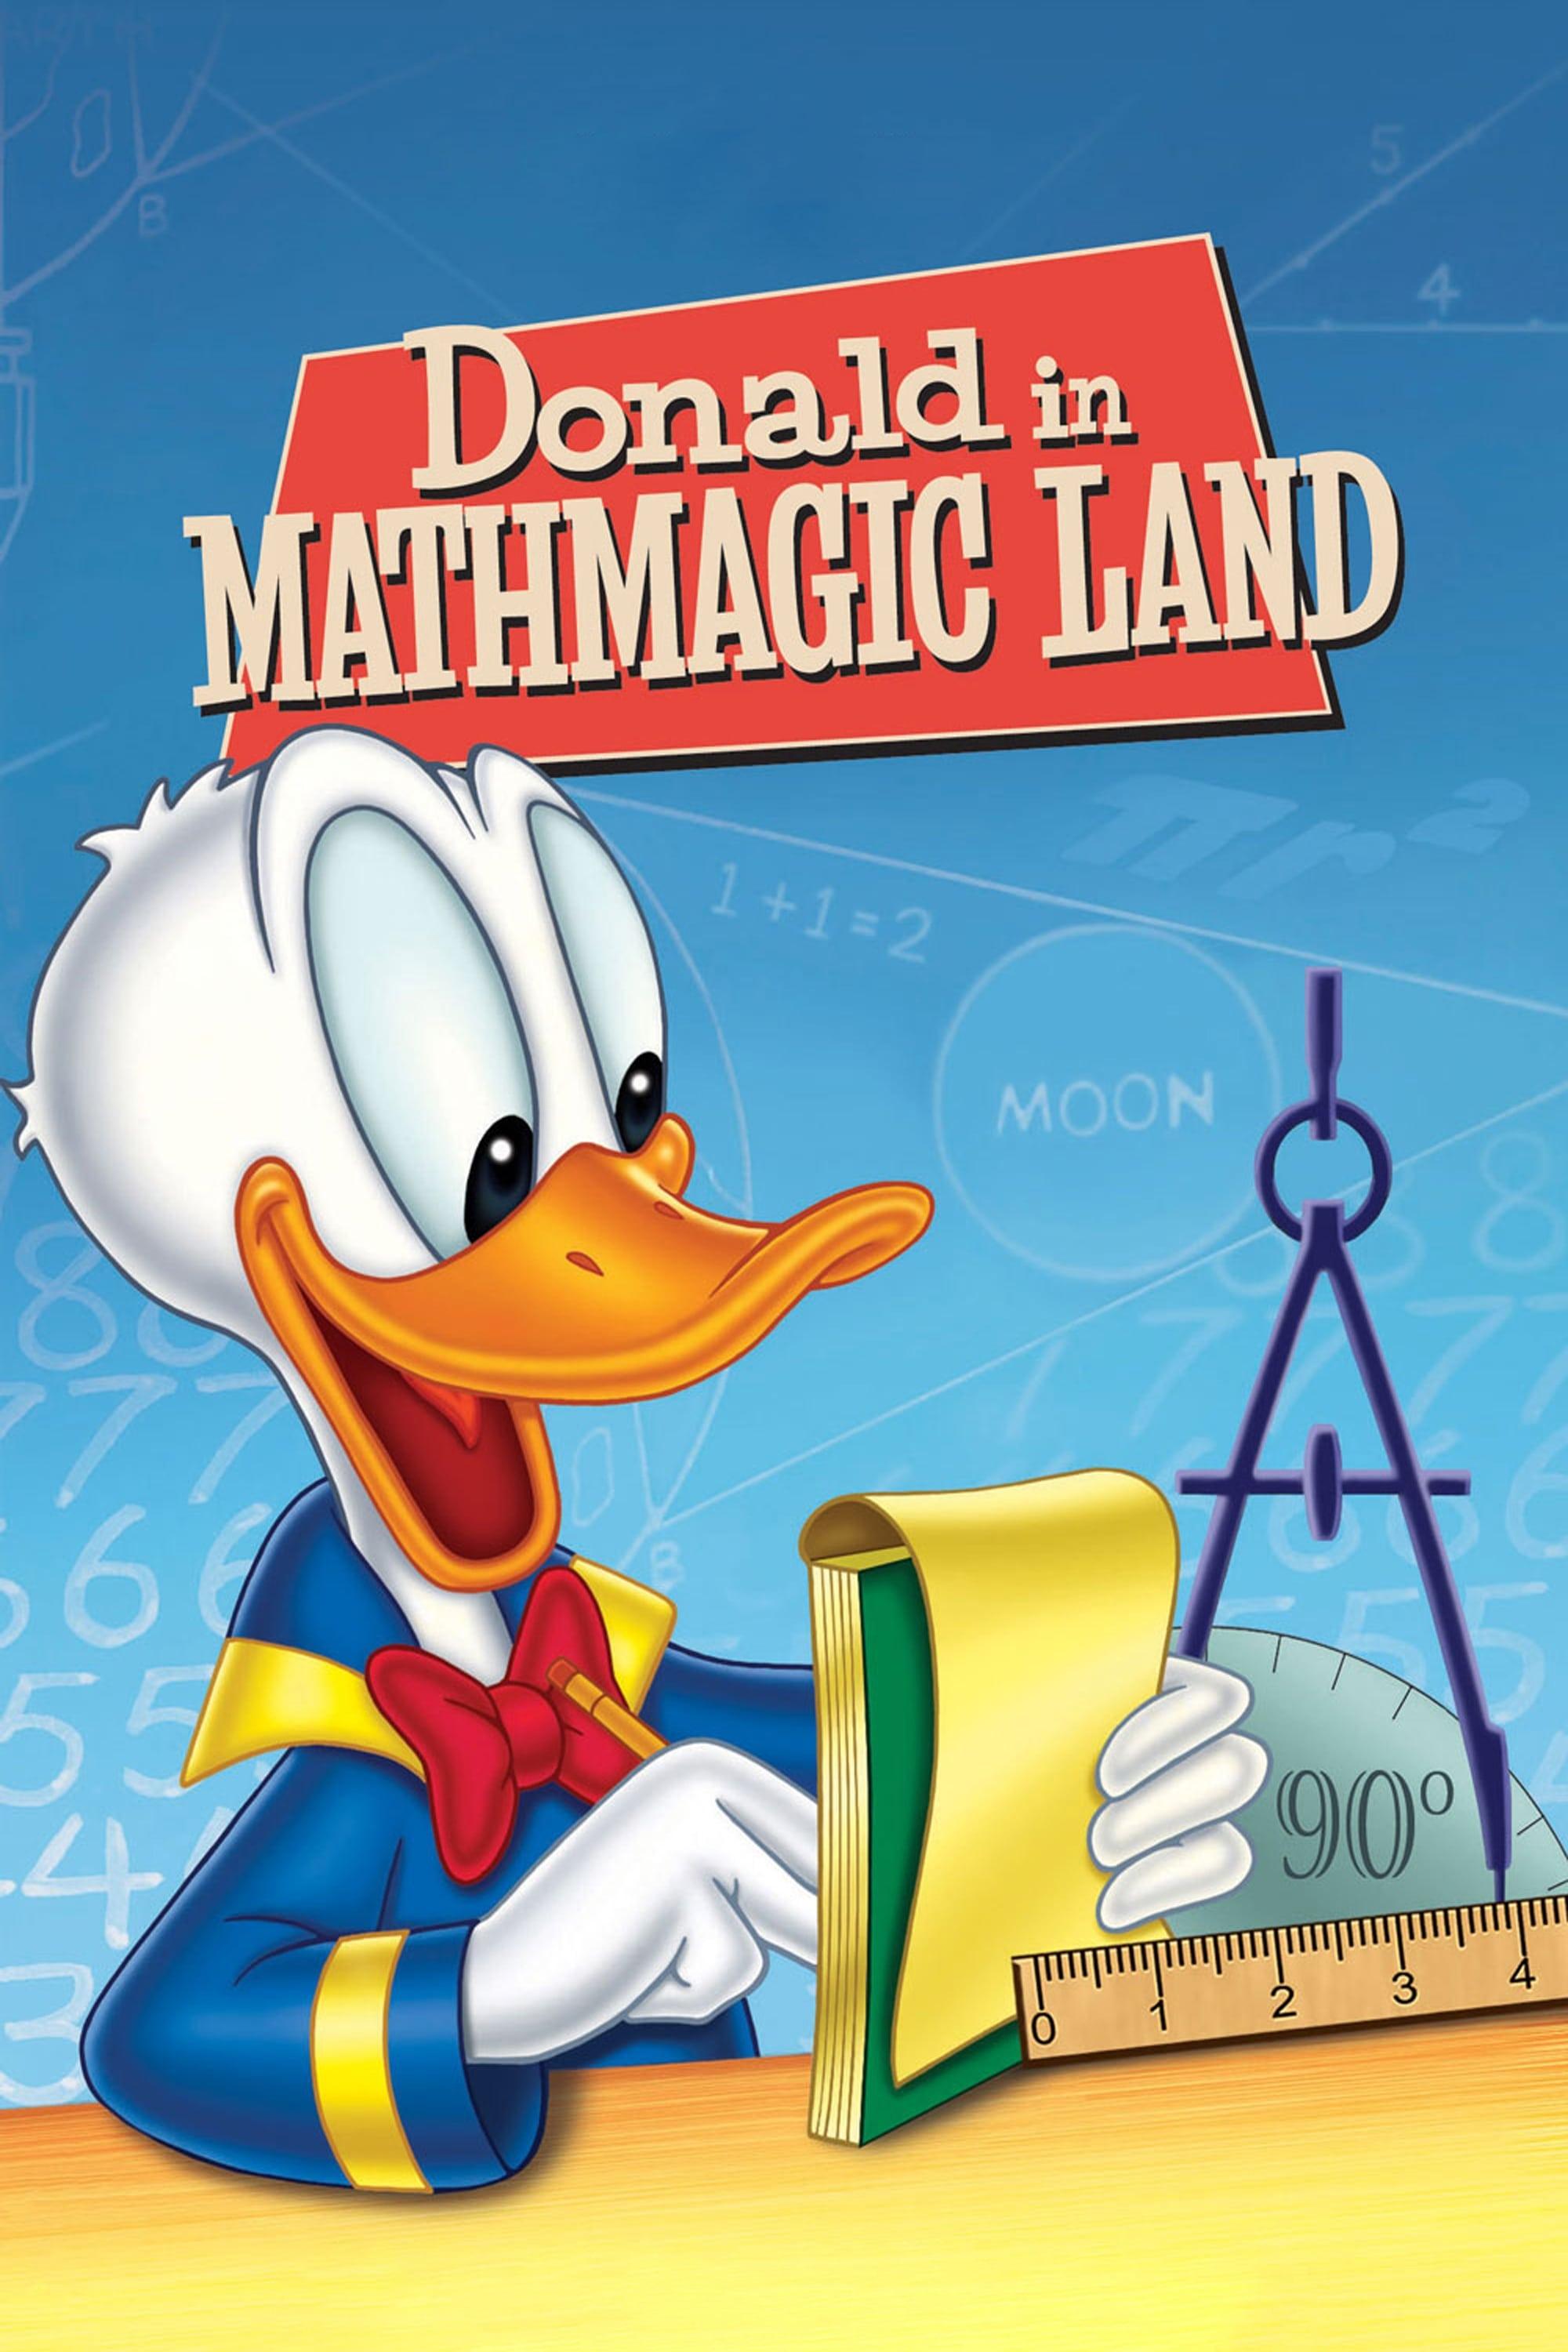 Donald in Mathmagic Land poster